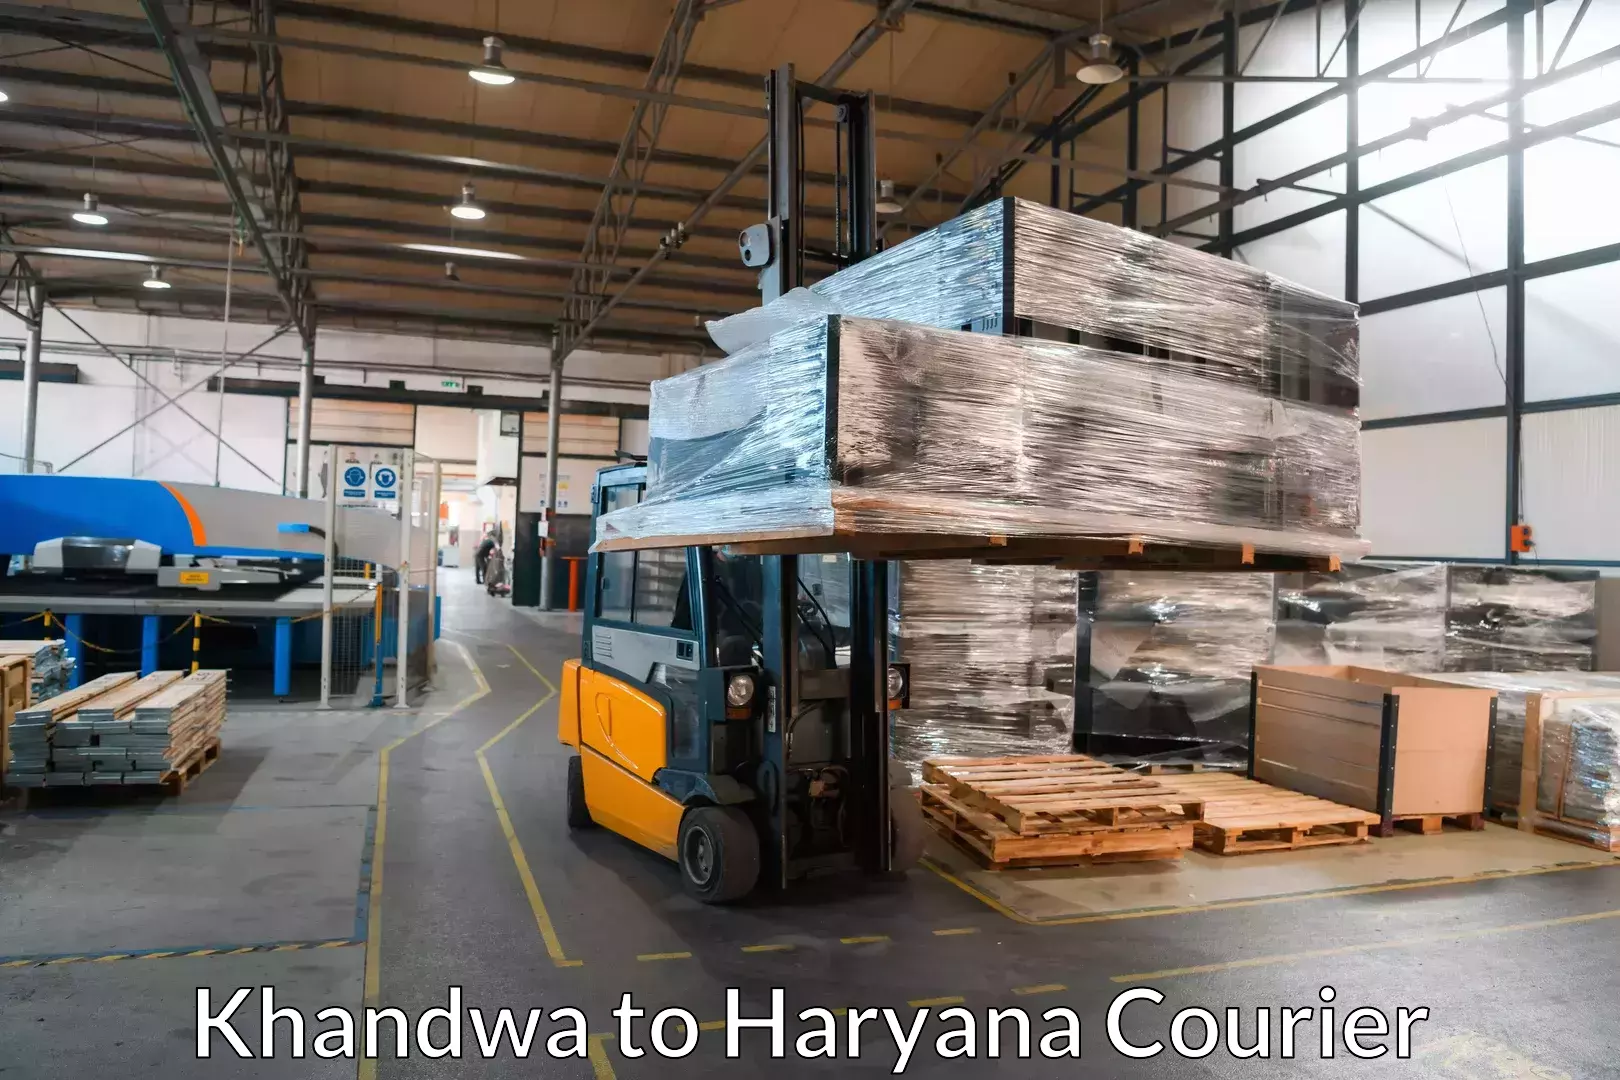 Professional moving company Khandwa to Yamuna Nagar